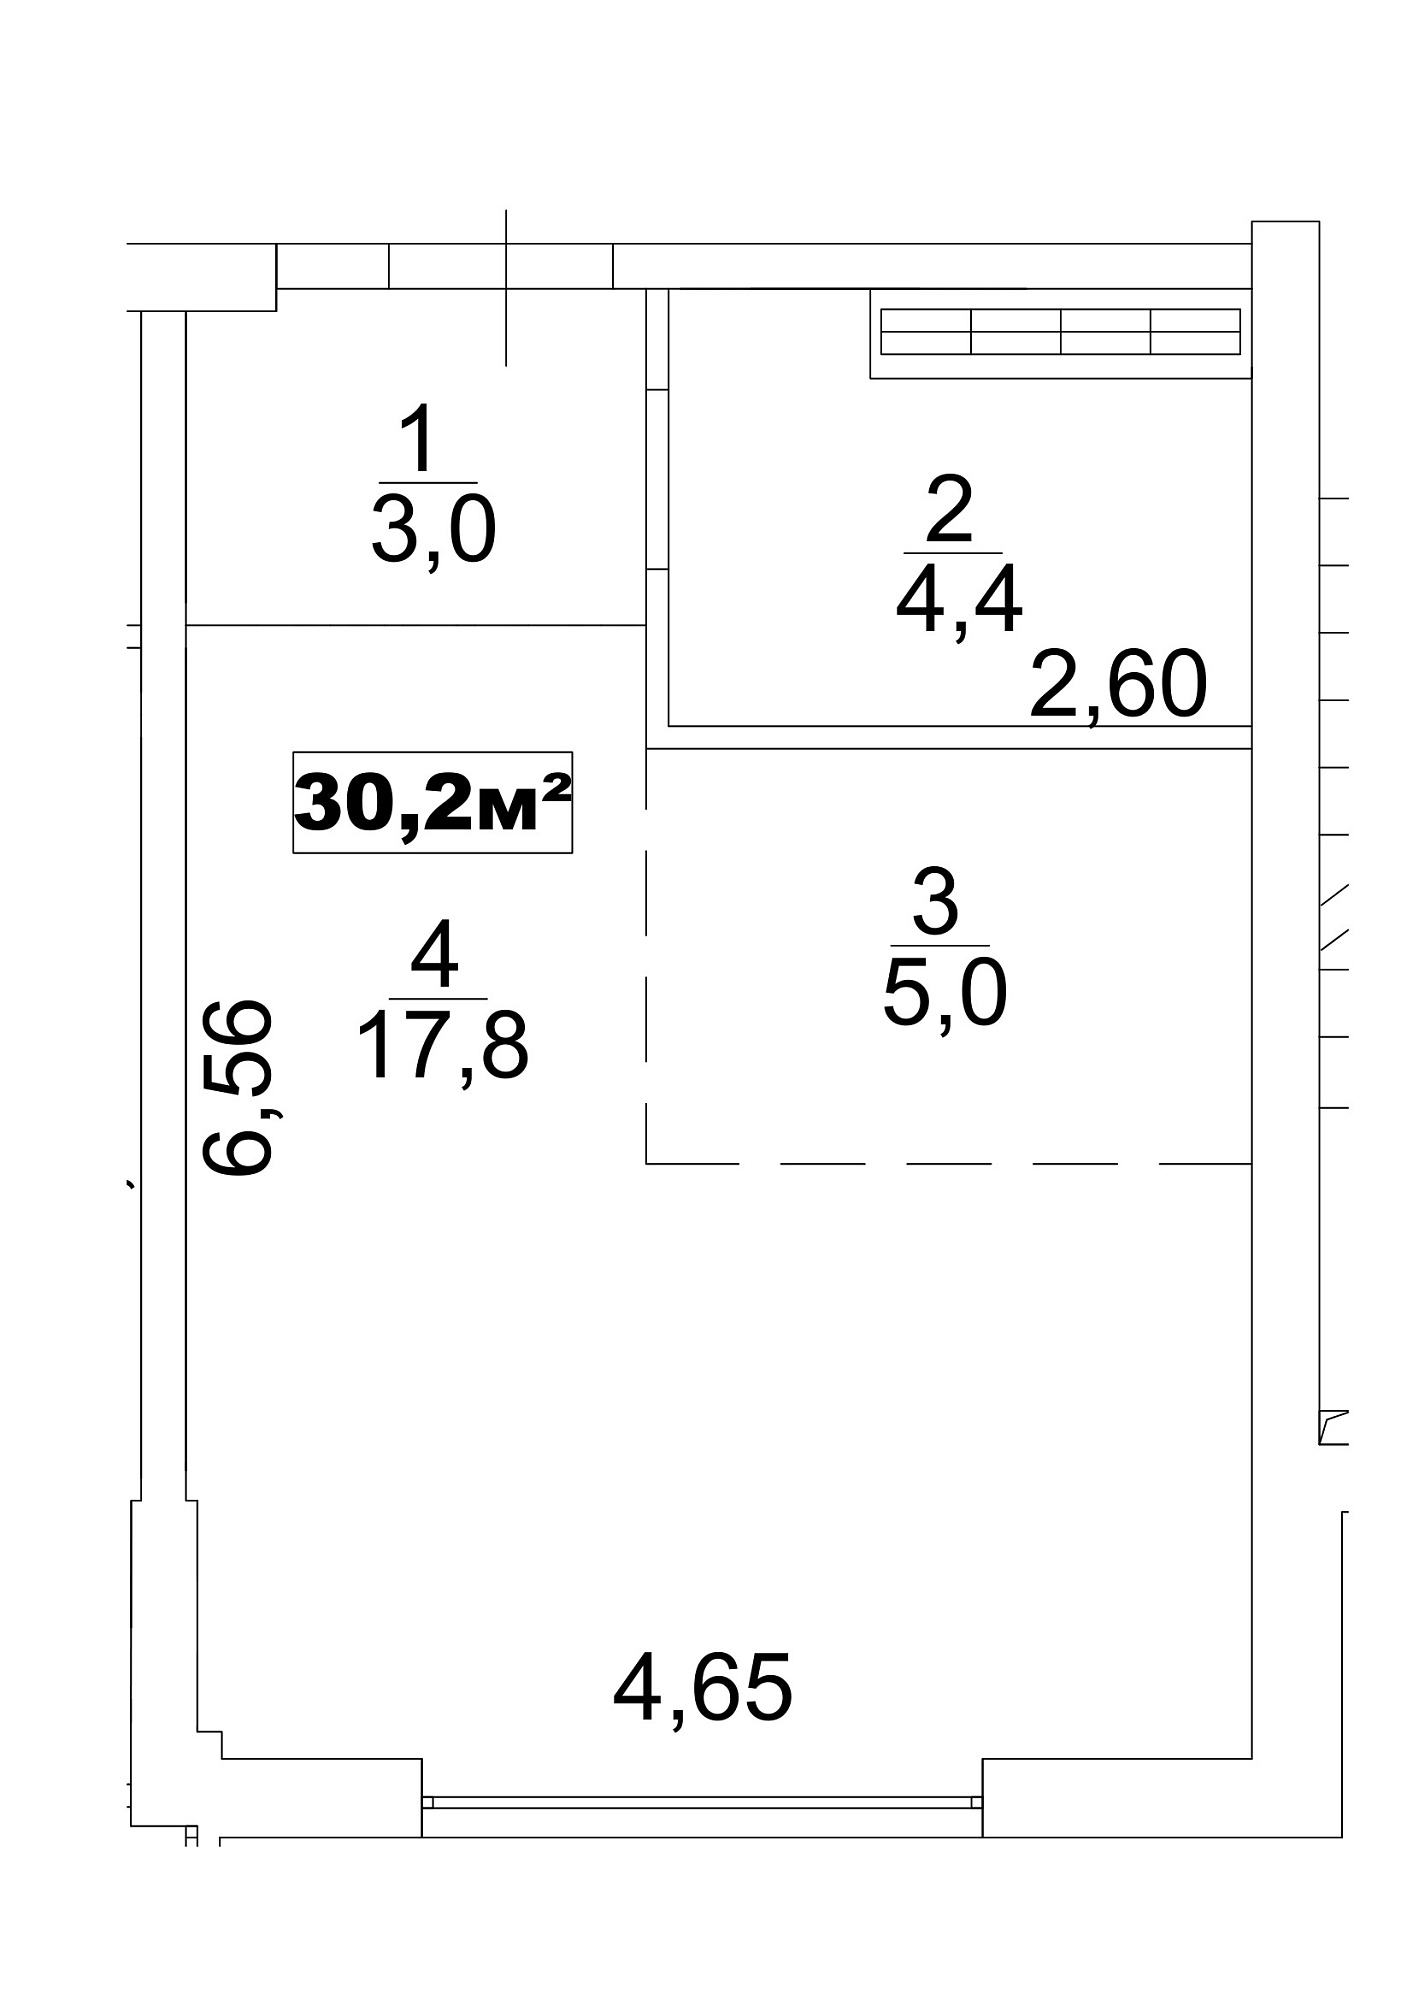 Планировка Smart-квартира площей 30.2м2, AB-13-08/0061а.